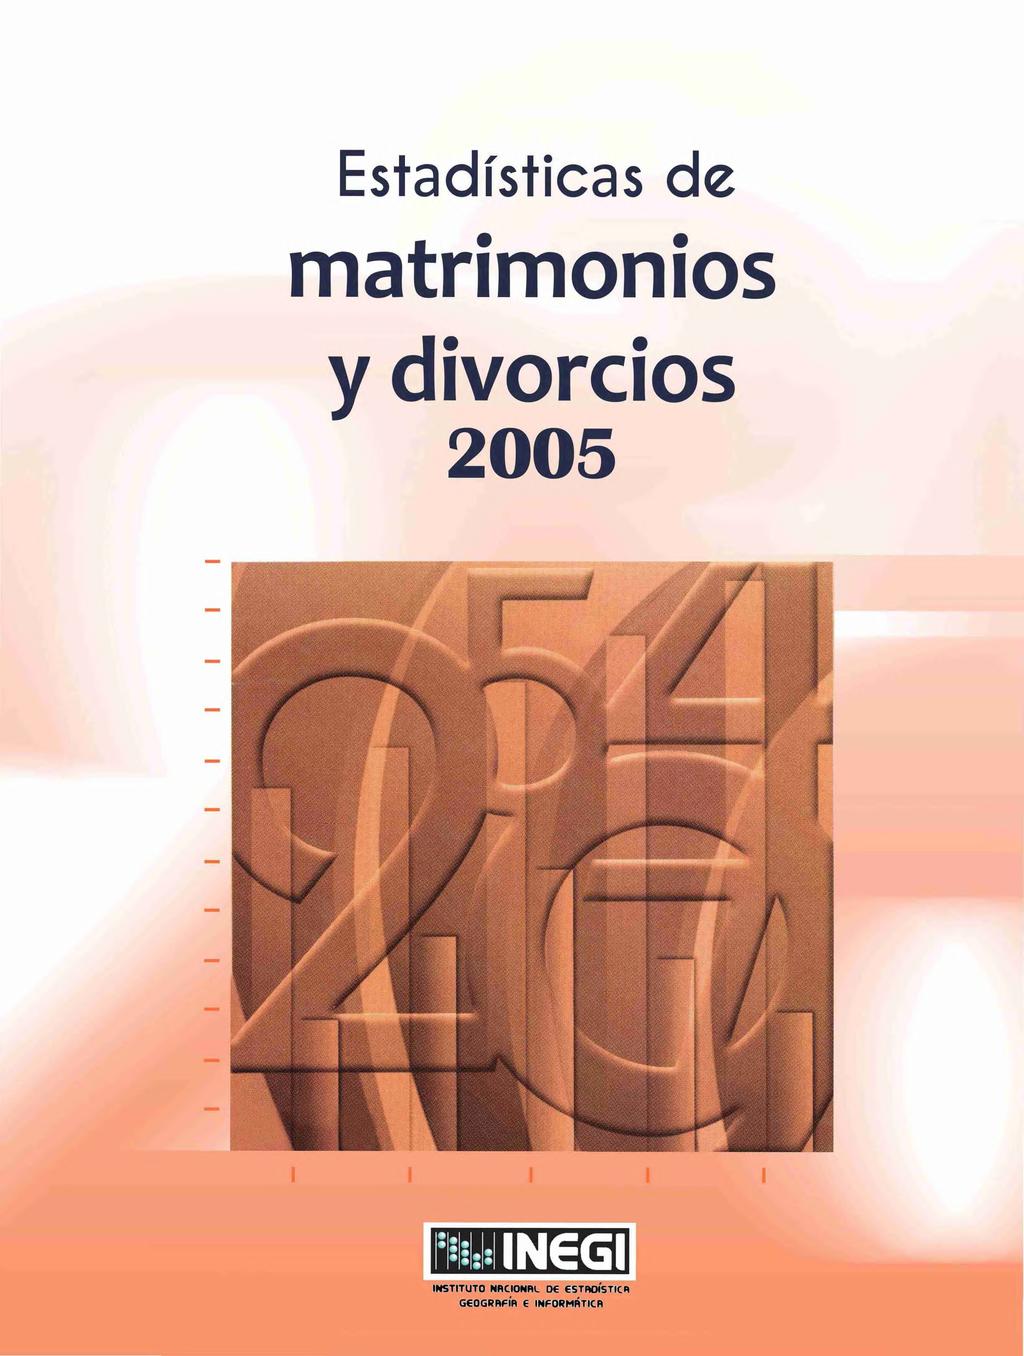 Estadísticas de matrimonios y divorcios si IN6GI